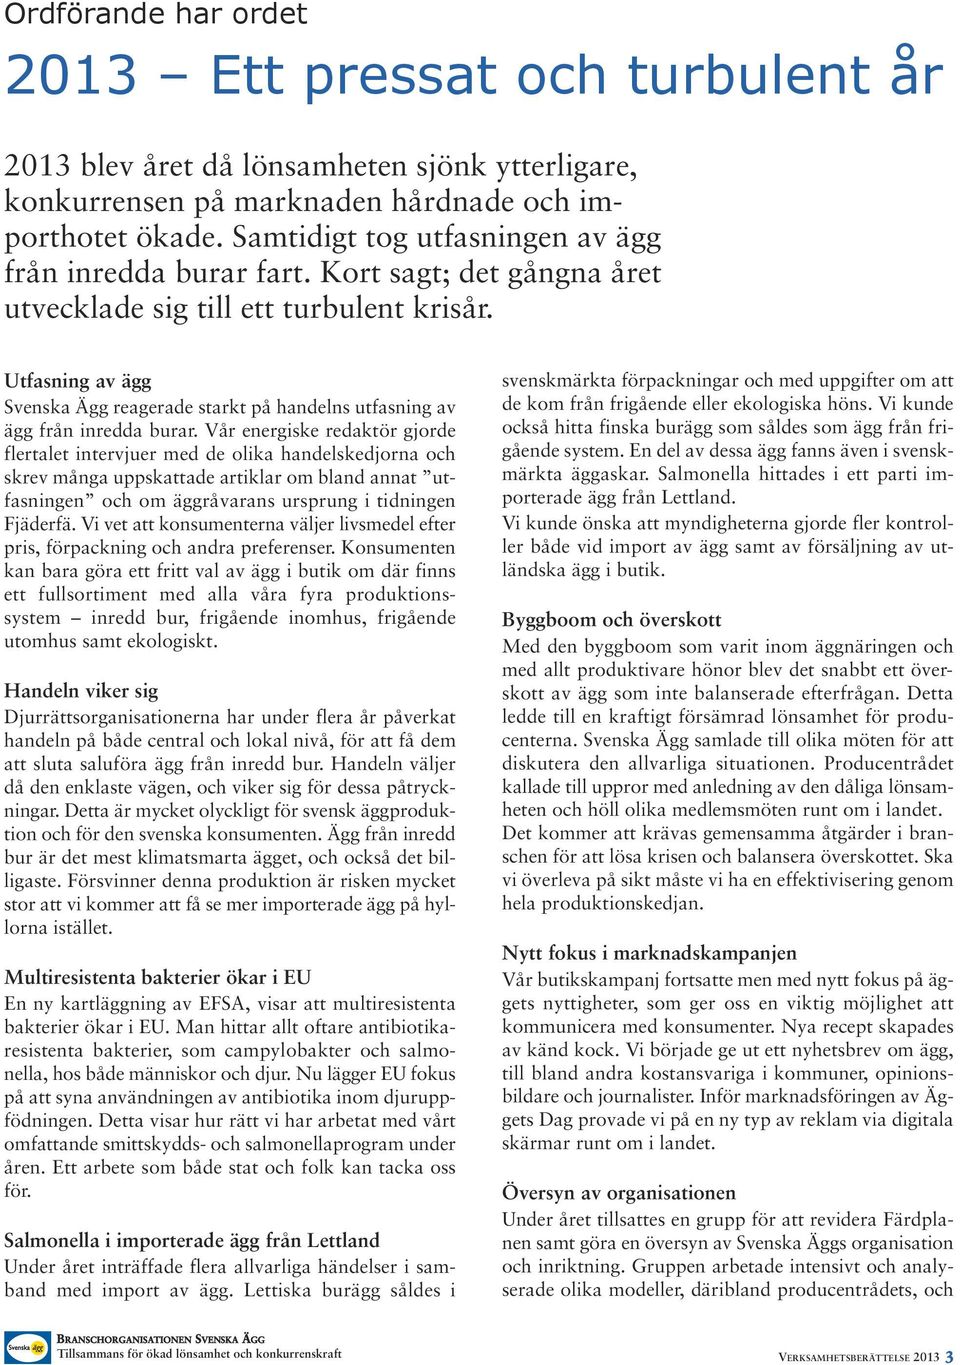 Utfasning av ägg Svenska Ägg reagerade starkt på handelns utfasning av ägg från inredda burar.